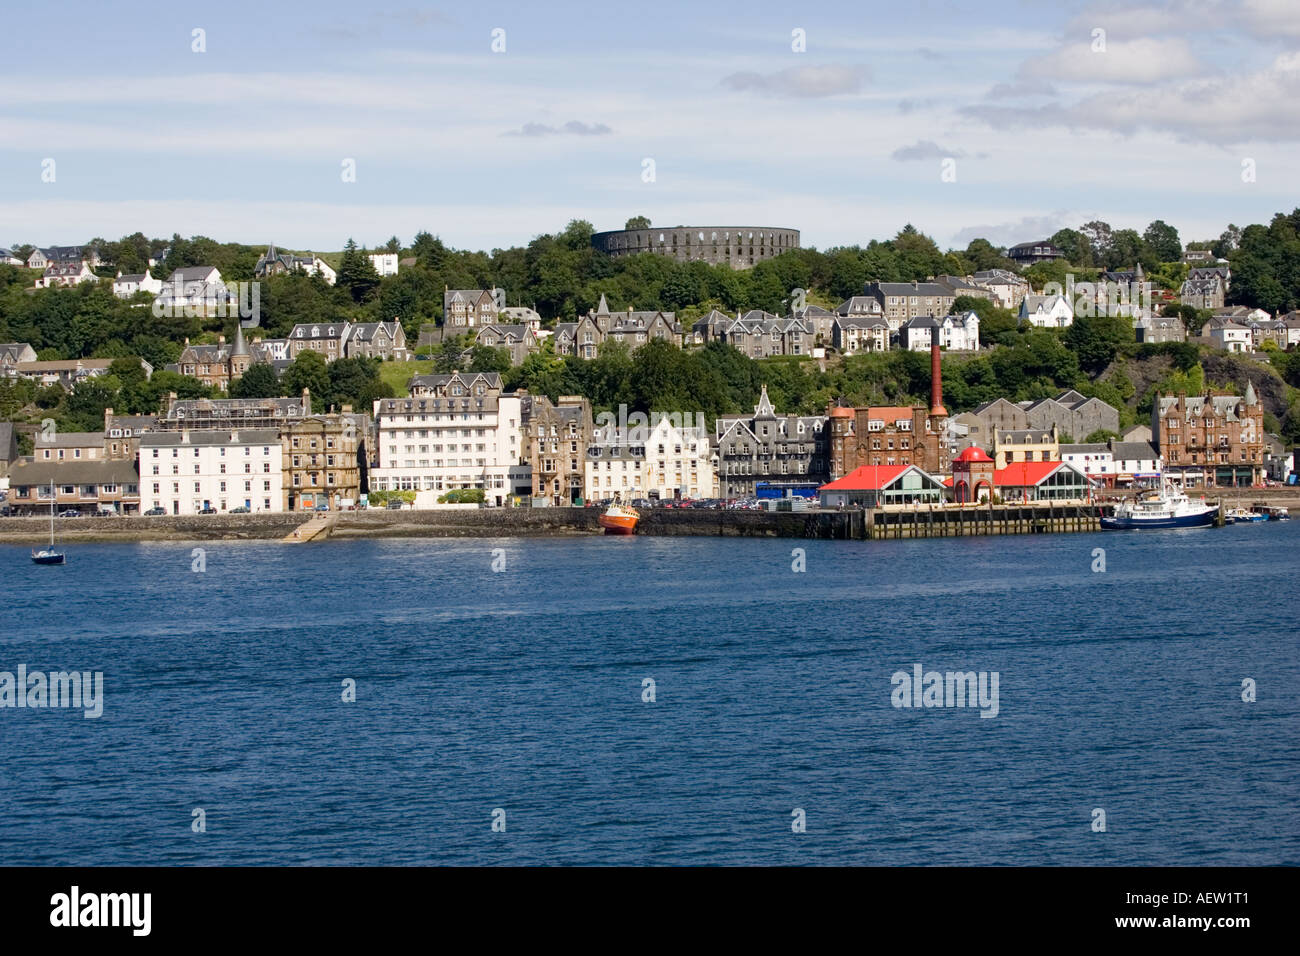 Vista di case e alberghi nella città di Oban lungo la banchina del porto dalla Scozia UK Foto Stock